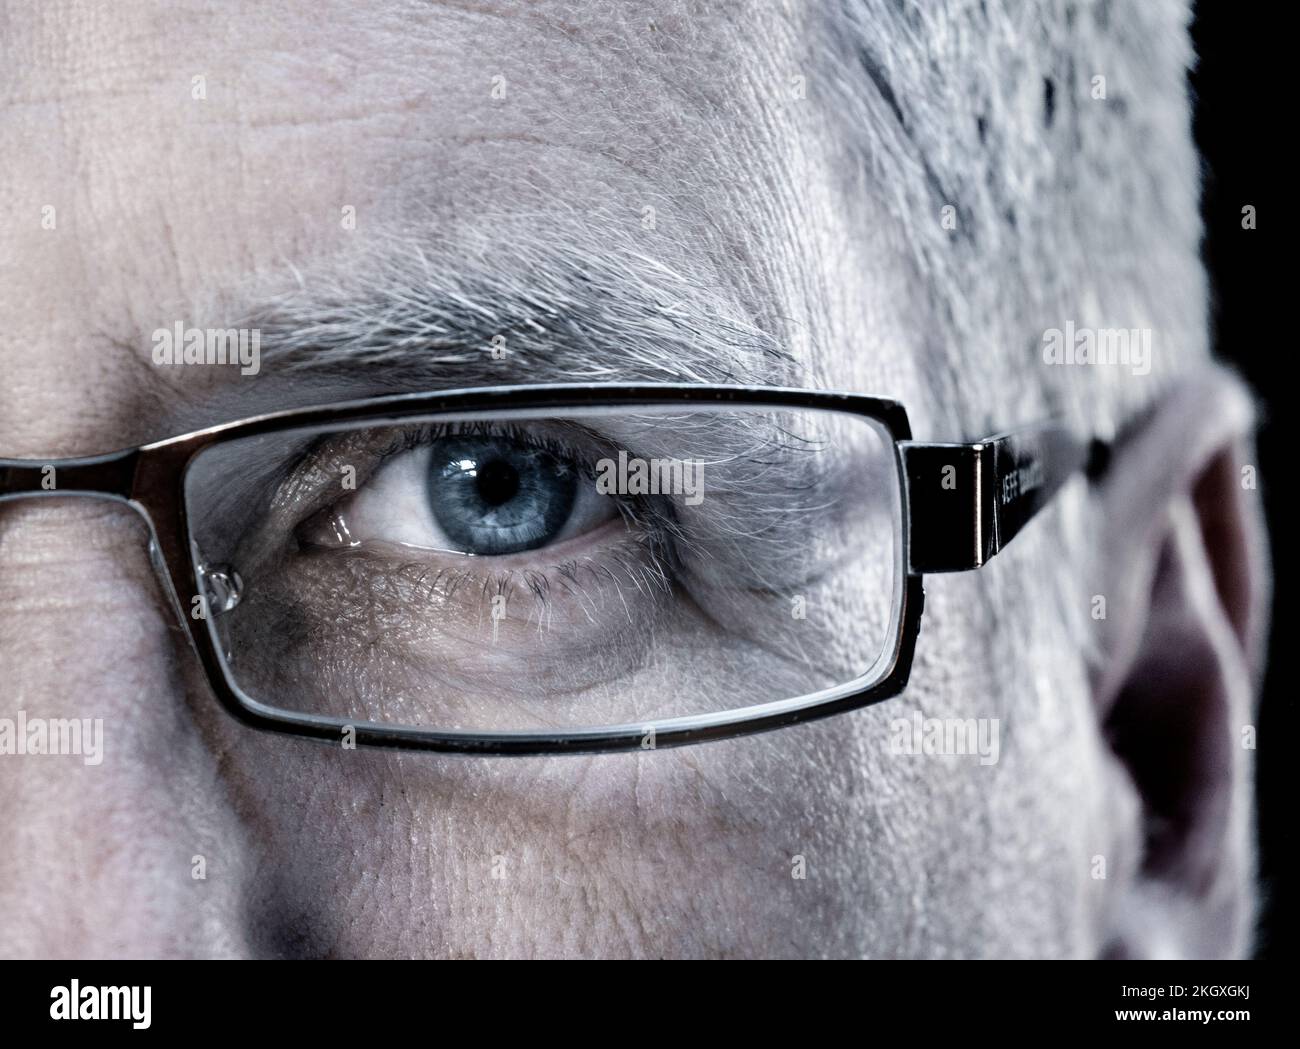 Lunettes demi-visage pour hommes matures homme 50-55 ans avec lunettes design lunettes gros plan bleu clair vue directe vers l'avant Banque D'Images